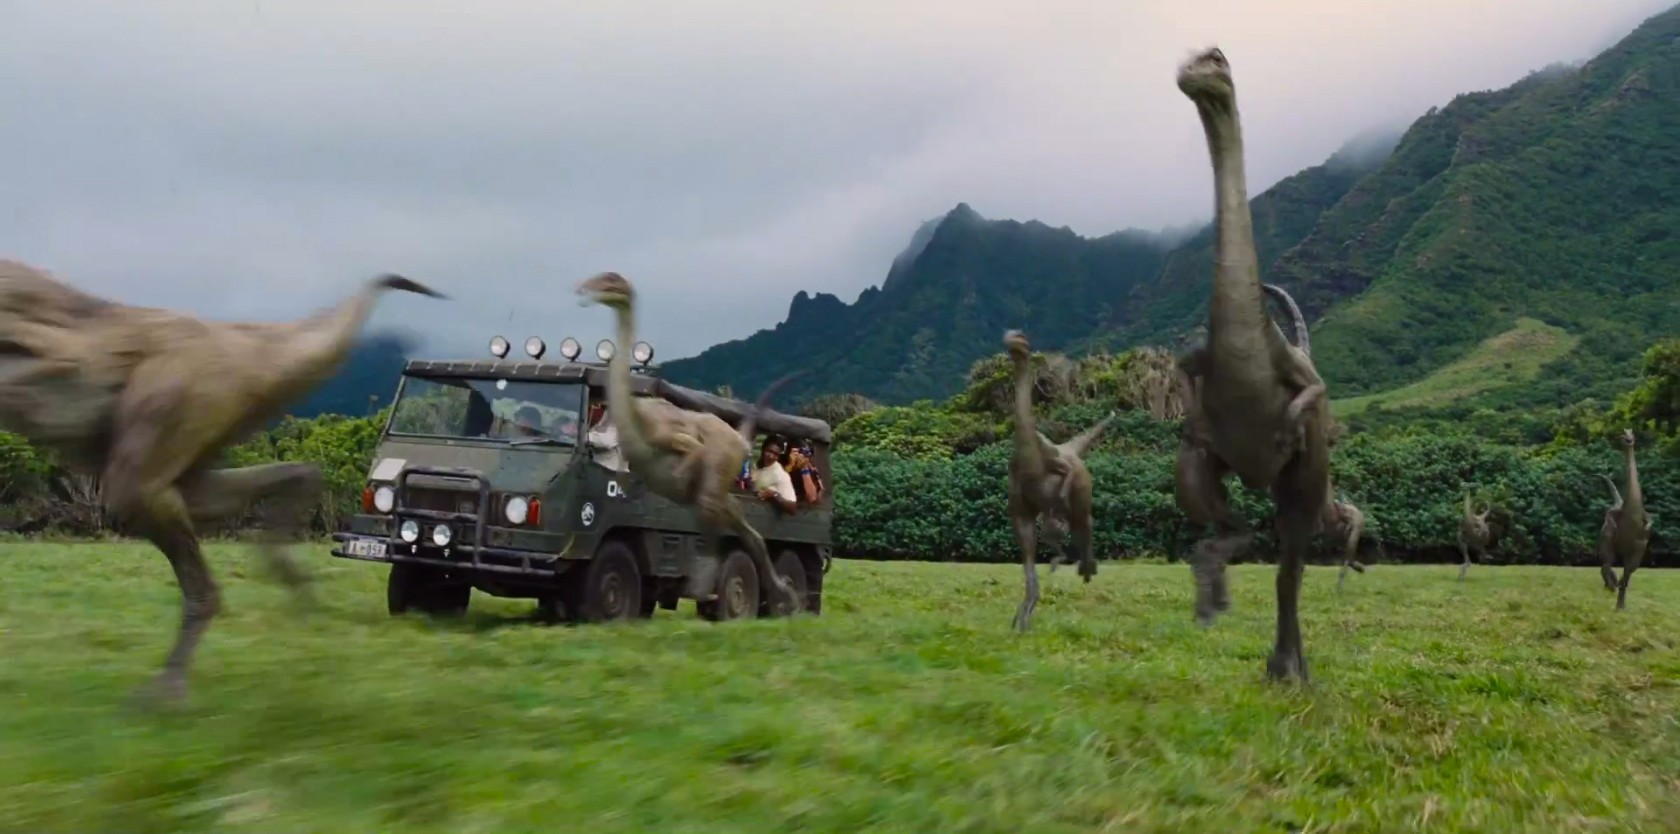 《侏罗纪世界》全长预告发布 猎食恐龙大开杀戒